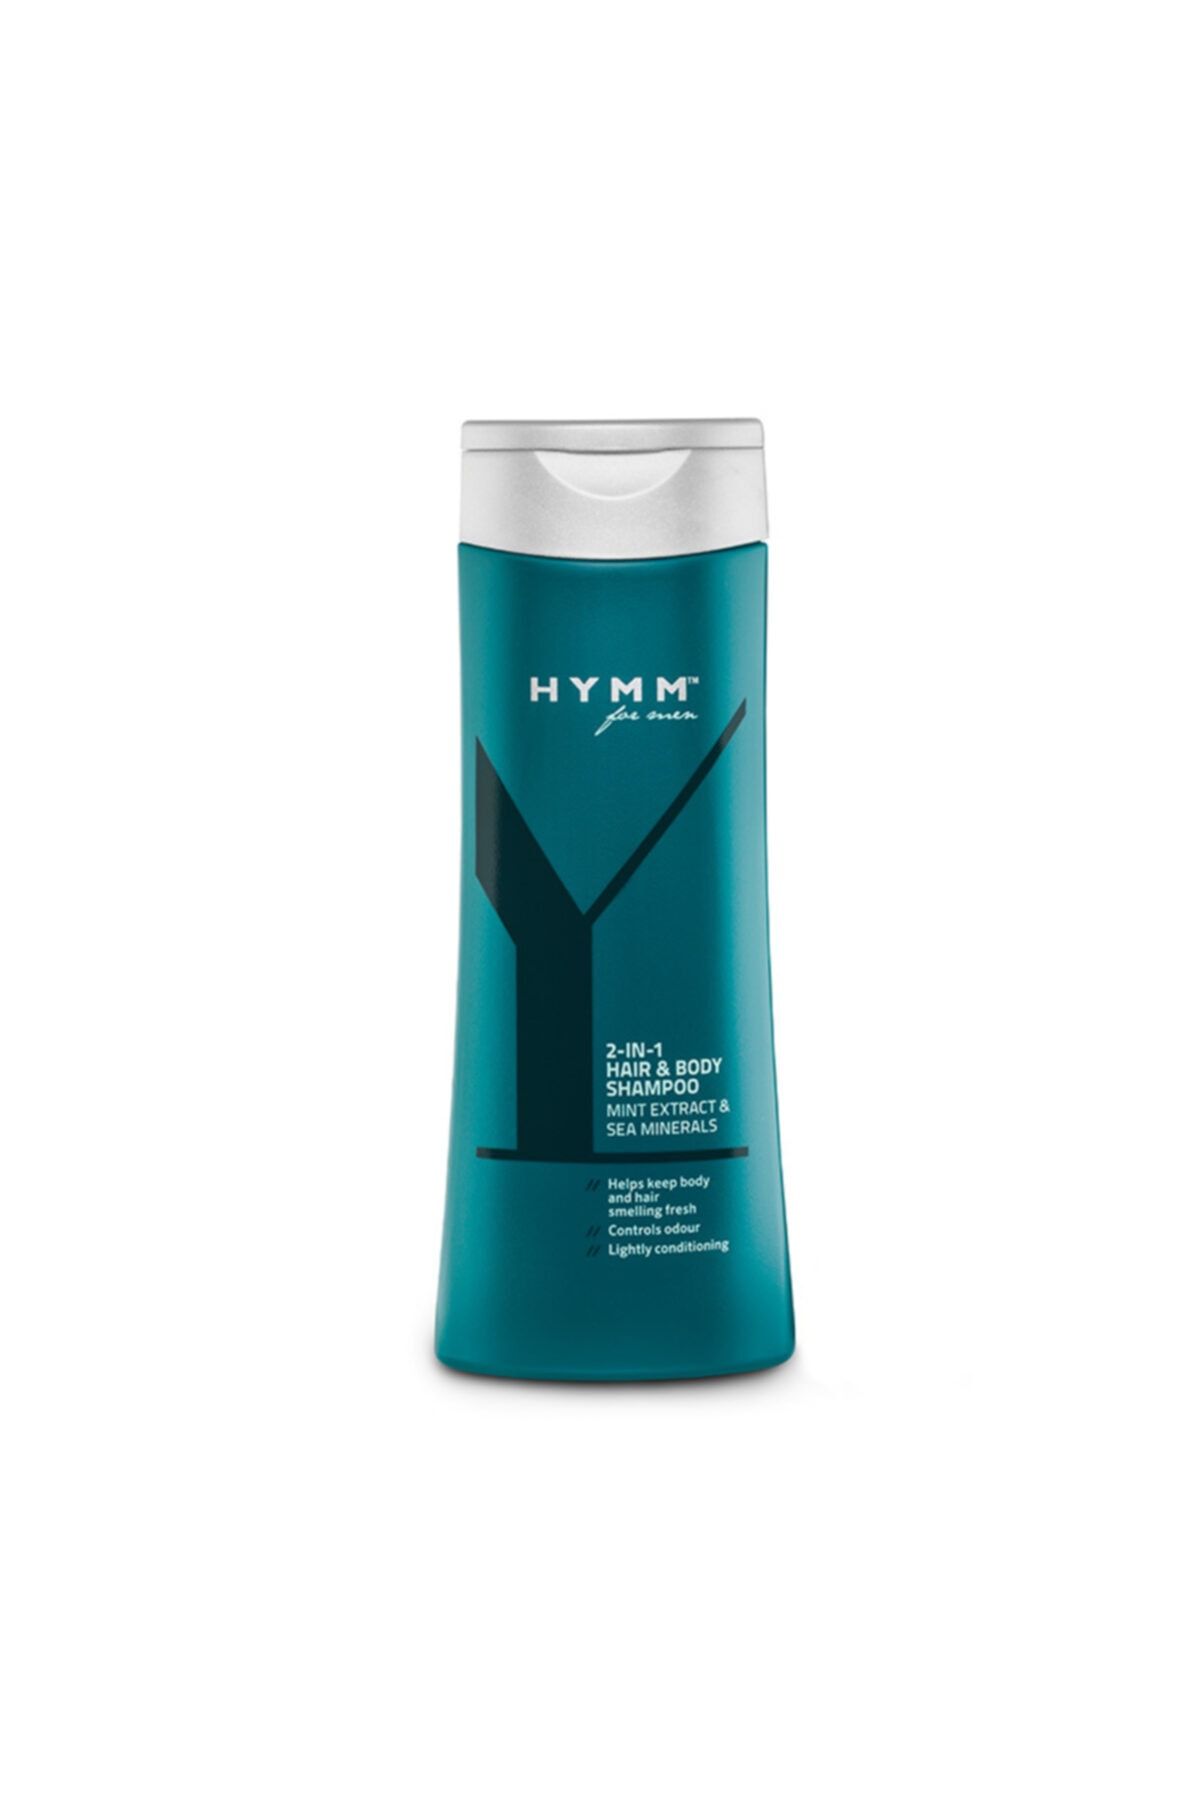 HYMM ™ 2'si 1 Arada Saç Ve Vücut Şampuanı 250 Ml Amway Ürün Kodu: 119008